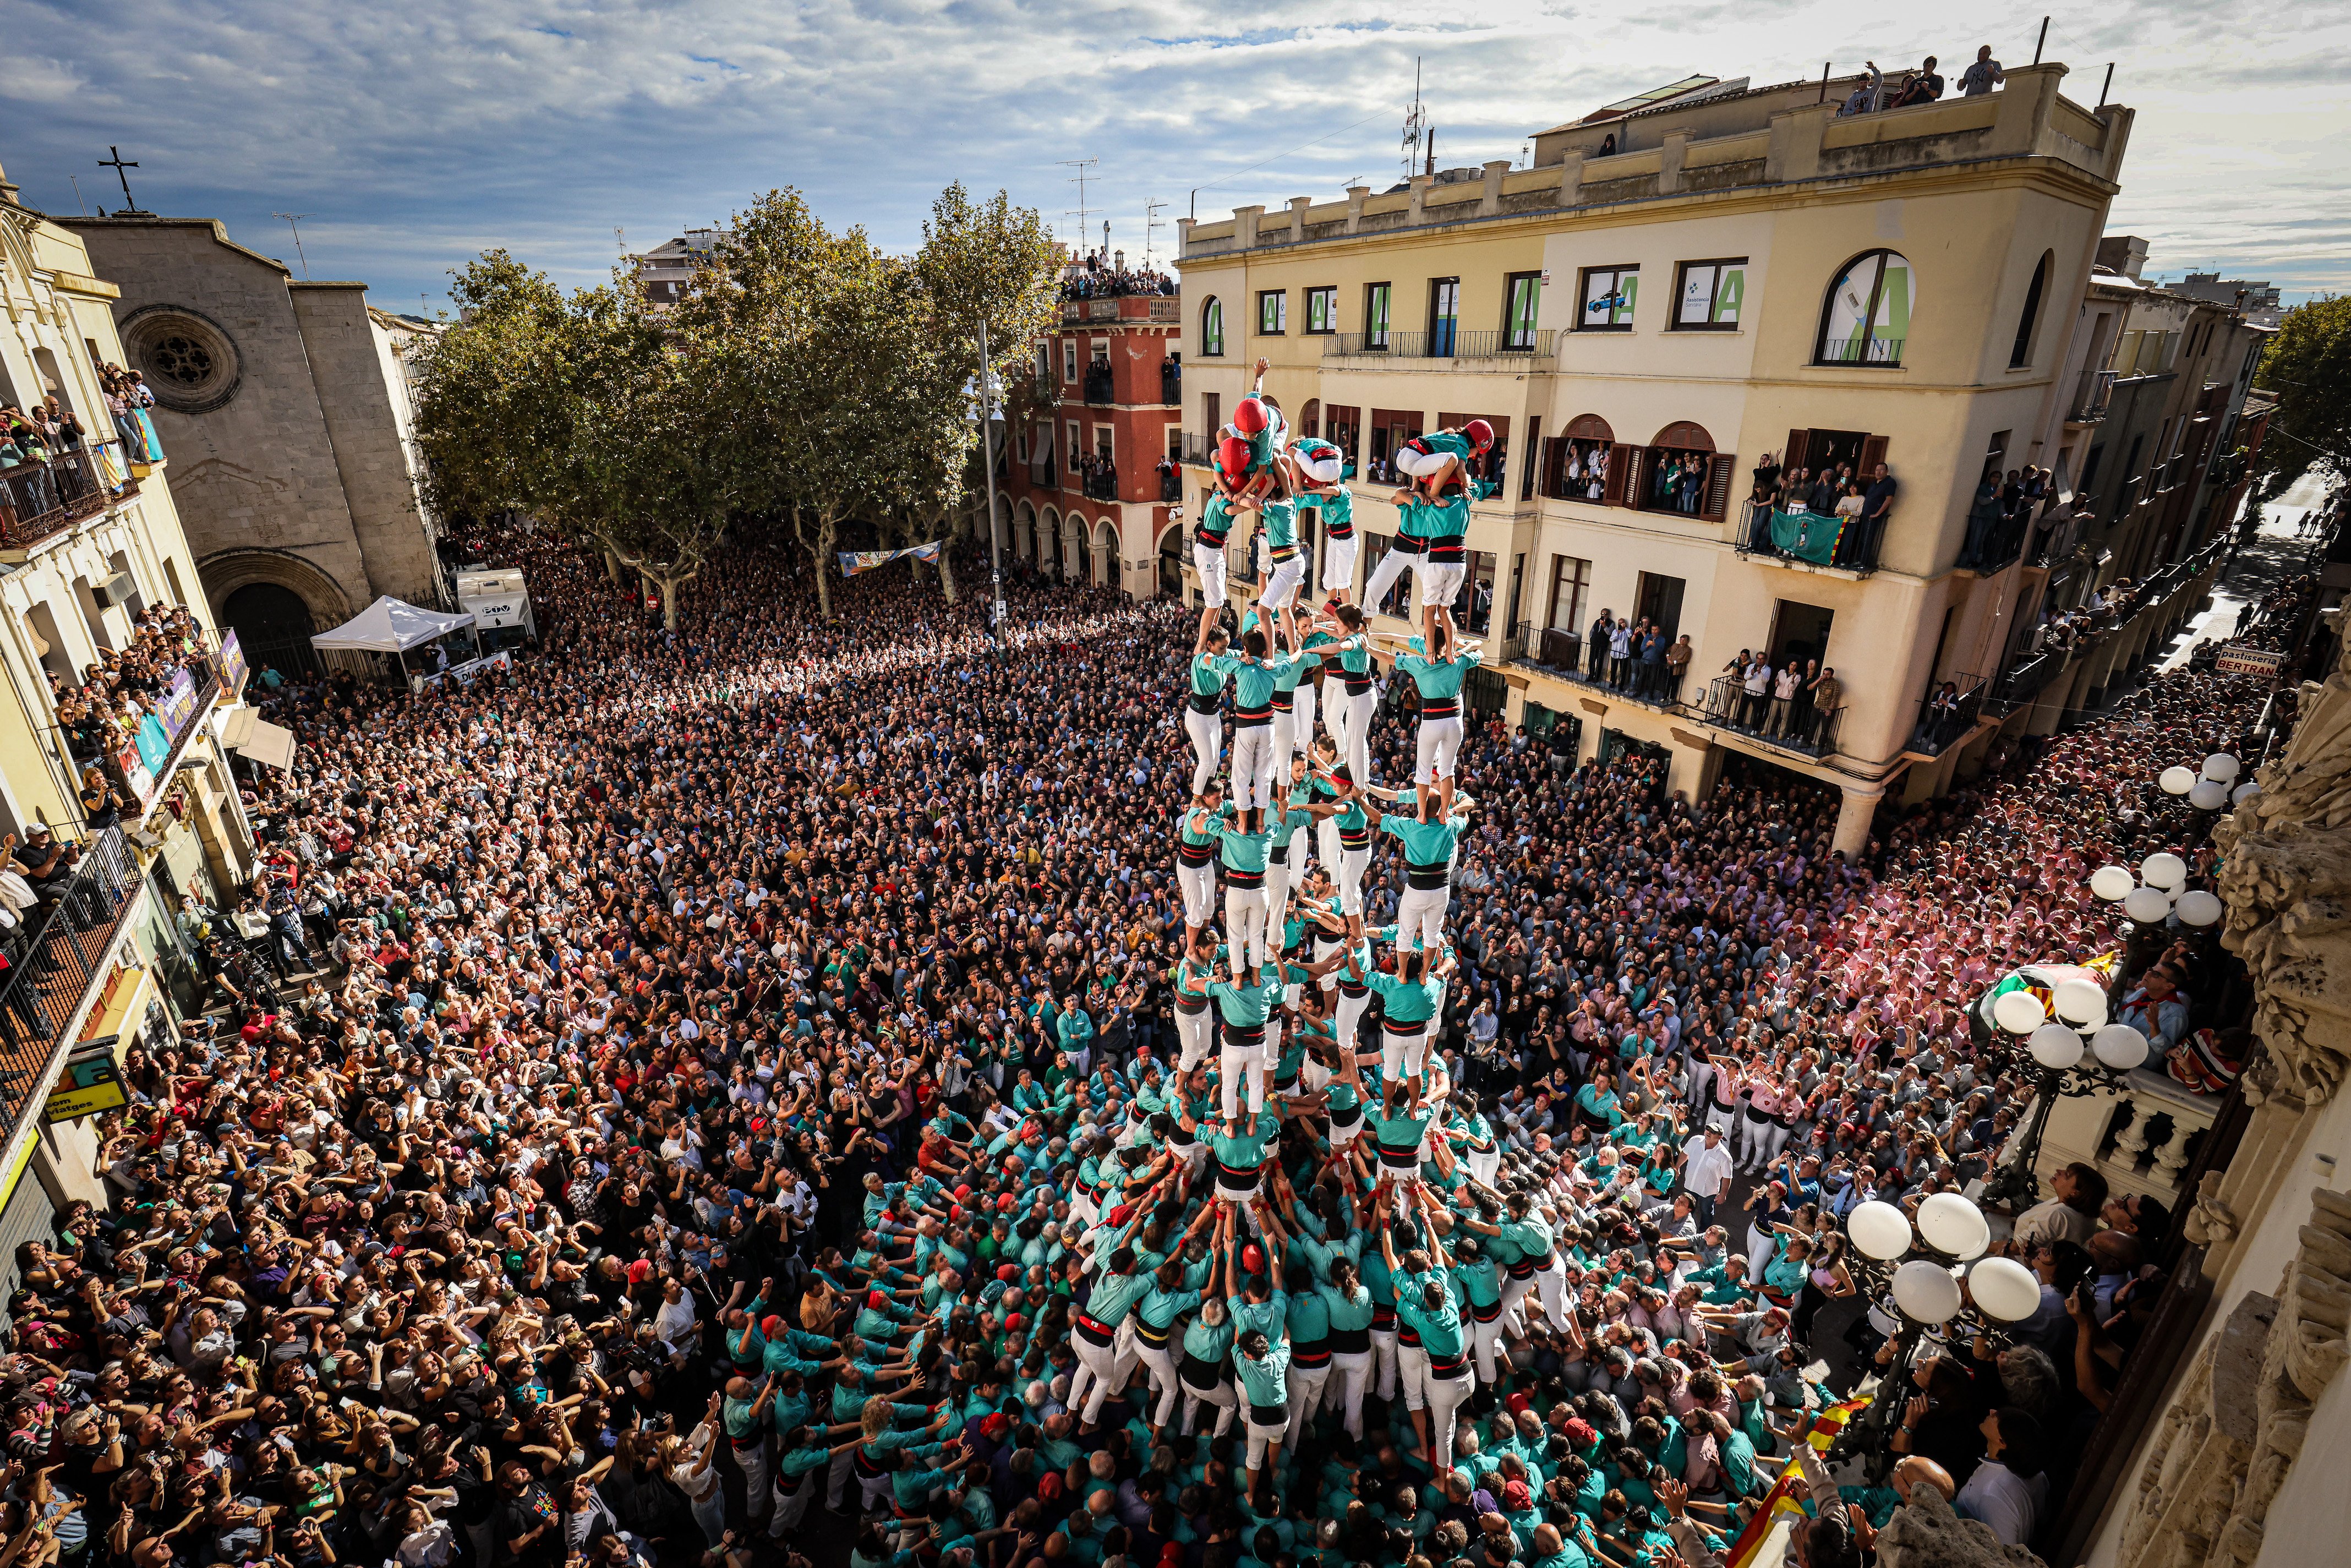 Els Castellers de Vilafranca tornen a fer història carregant el primer 9 de 9 amb folre | VÍDEO